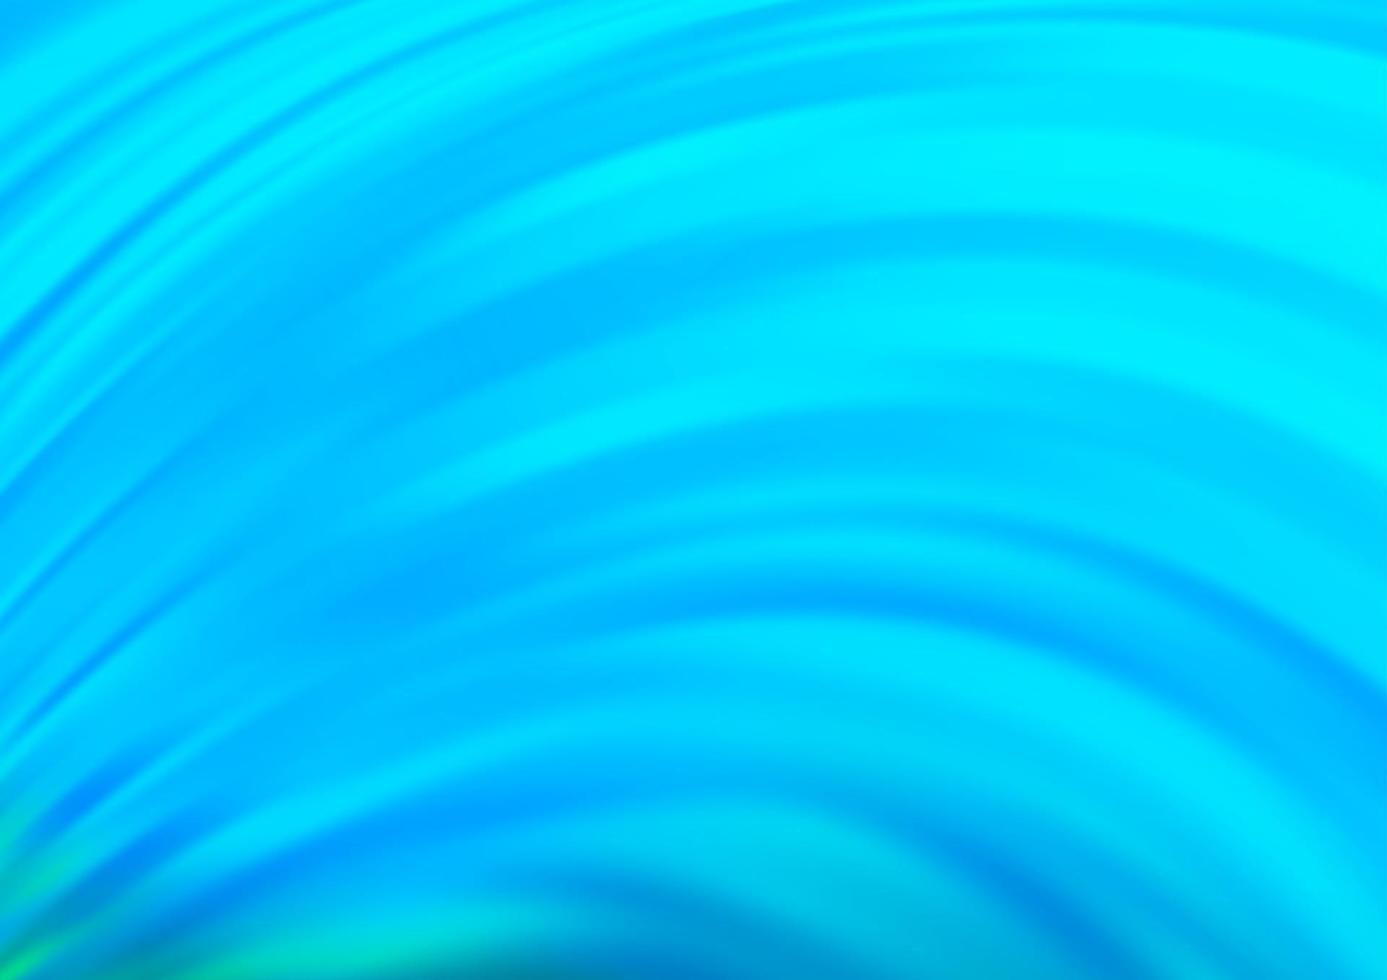 fundo vector azul claro com linhas dobradas.